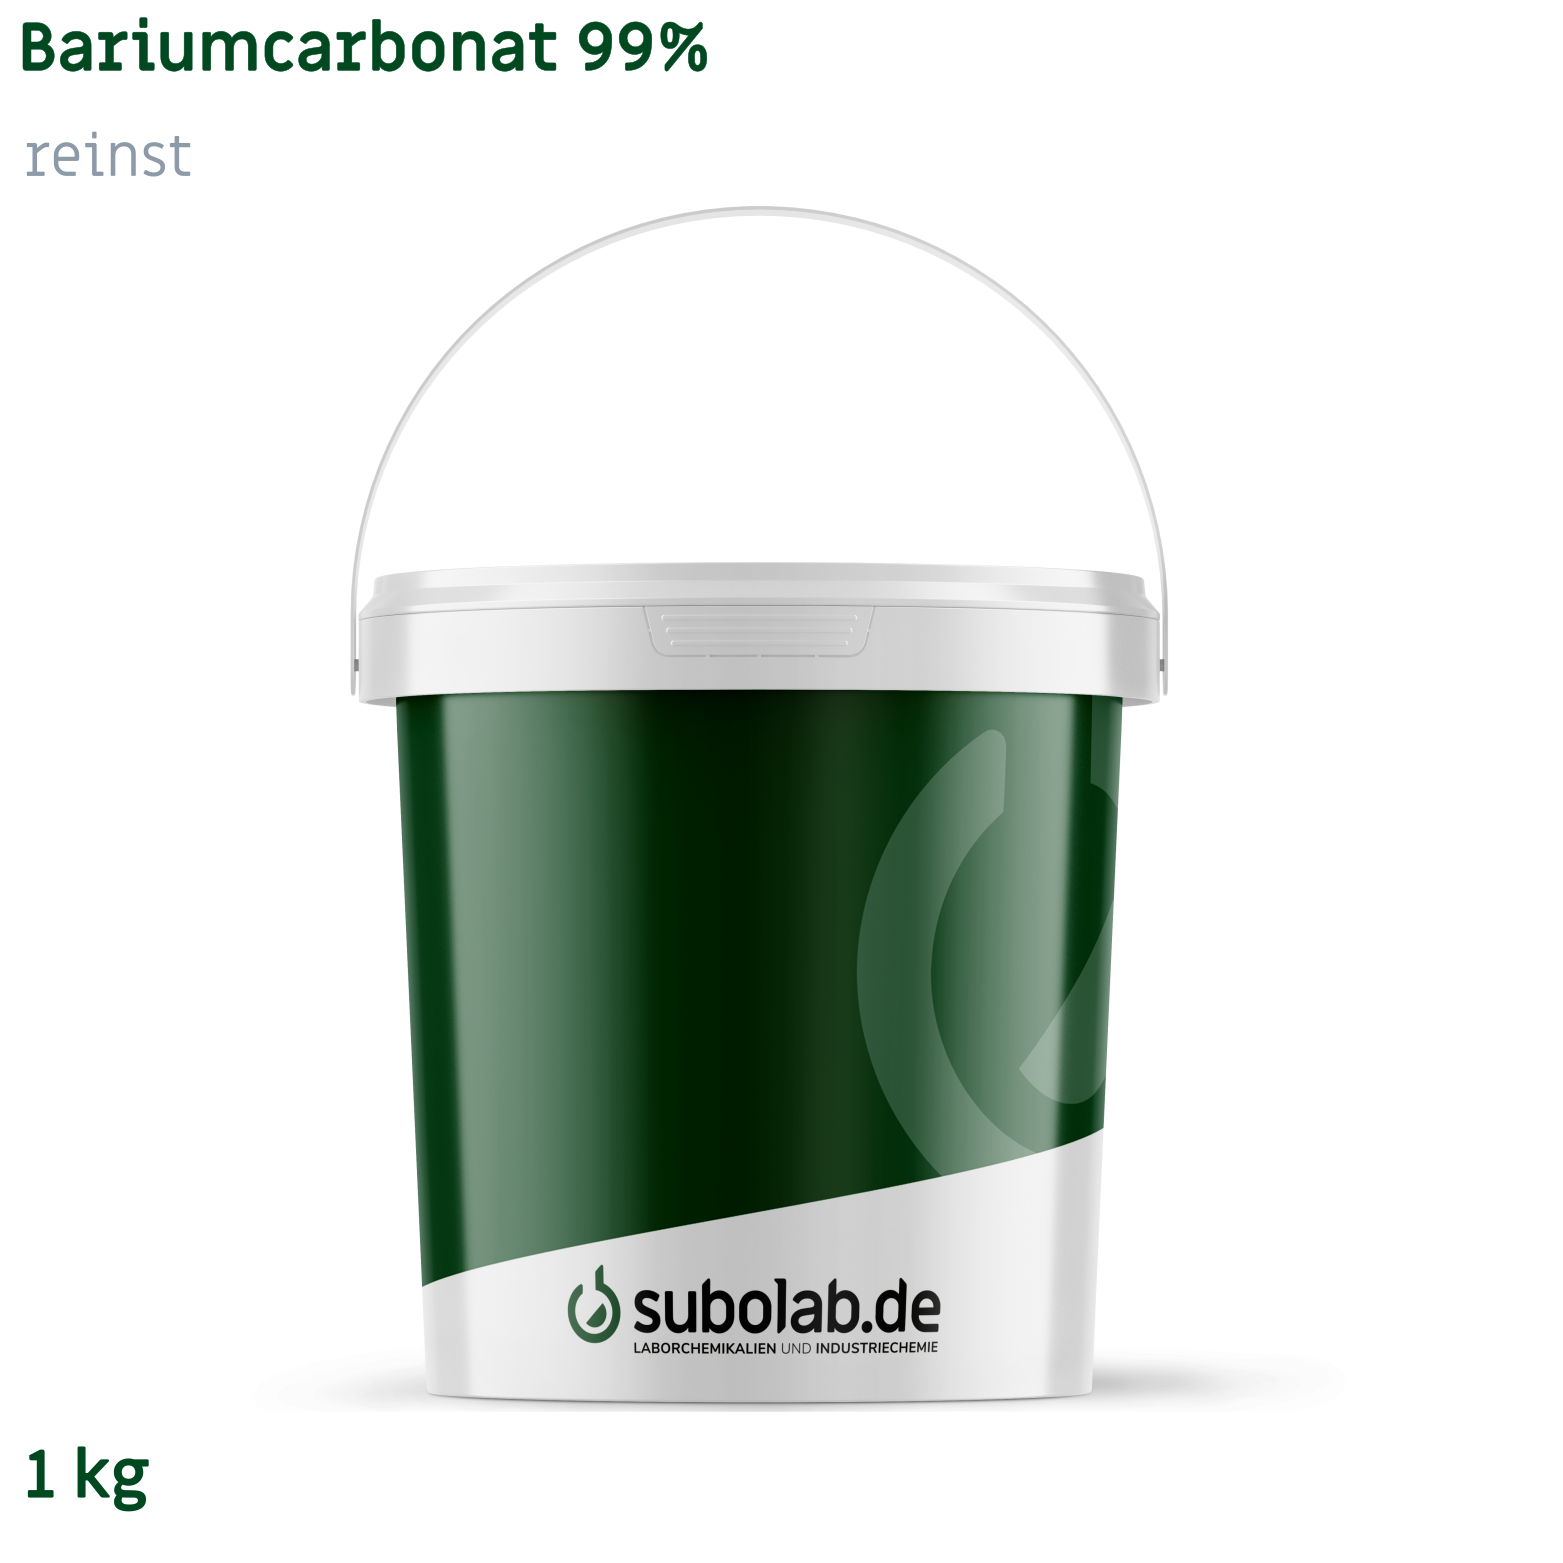 Bild von Bariumcarbonat 99% reinst (1 kg)